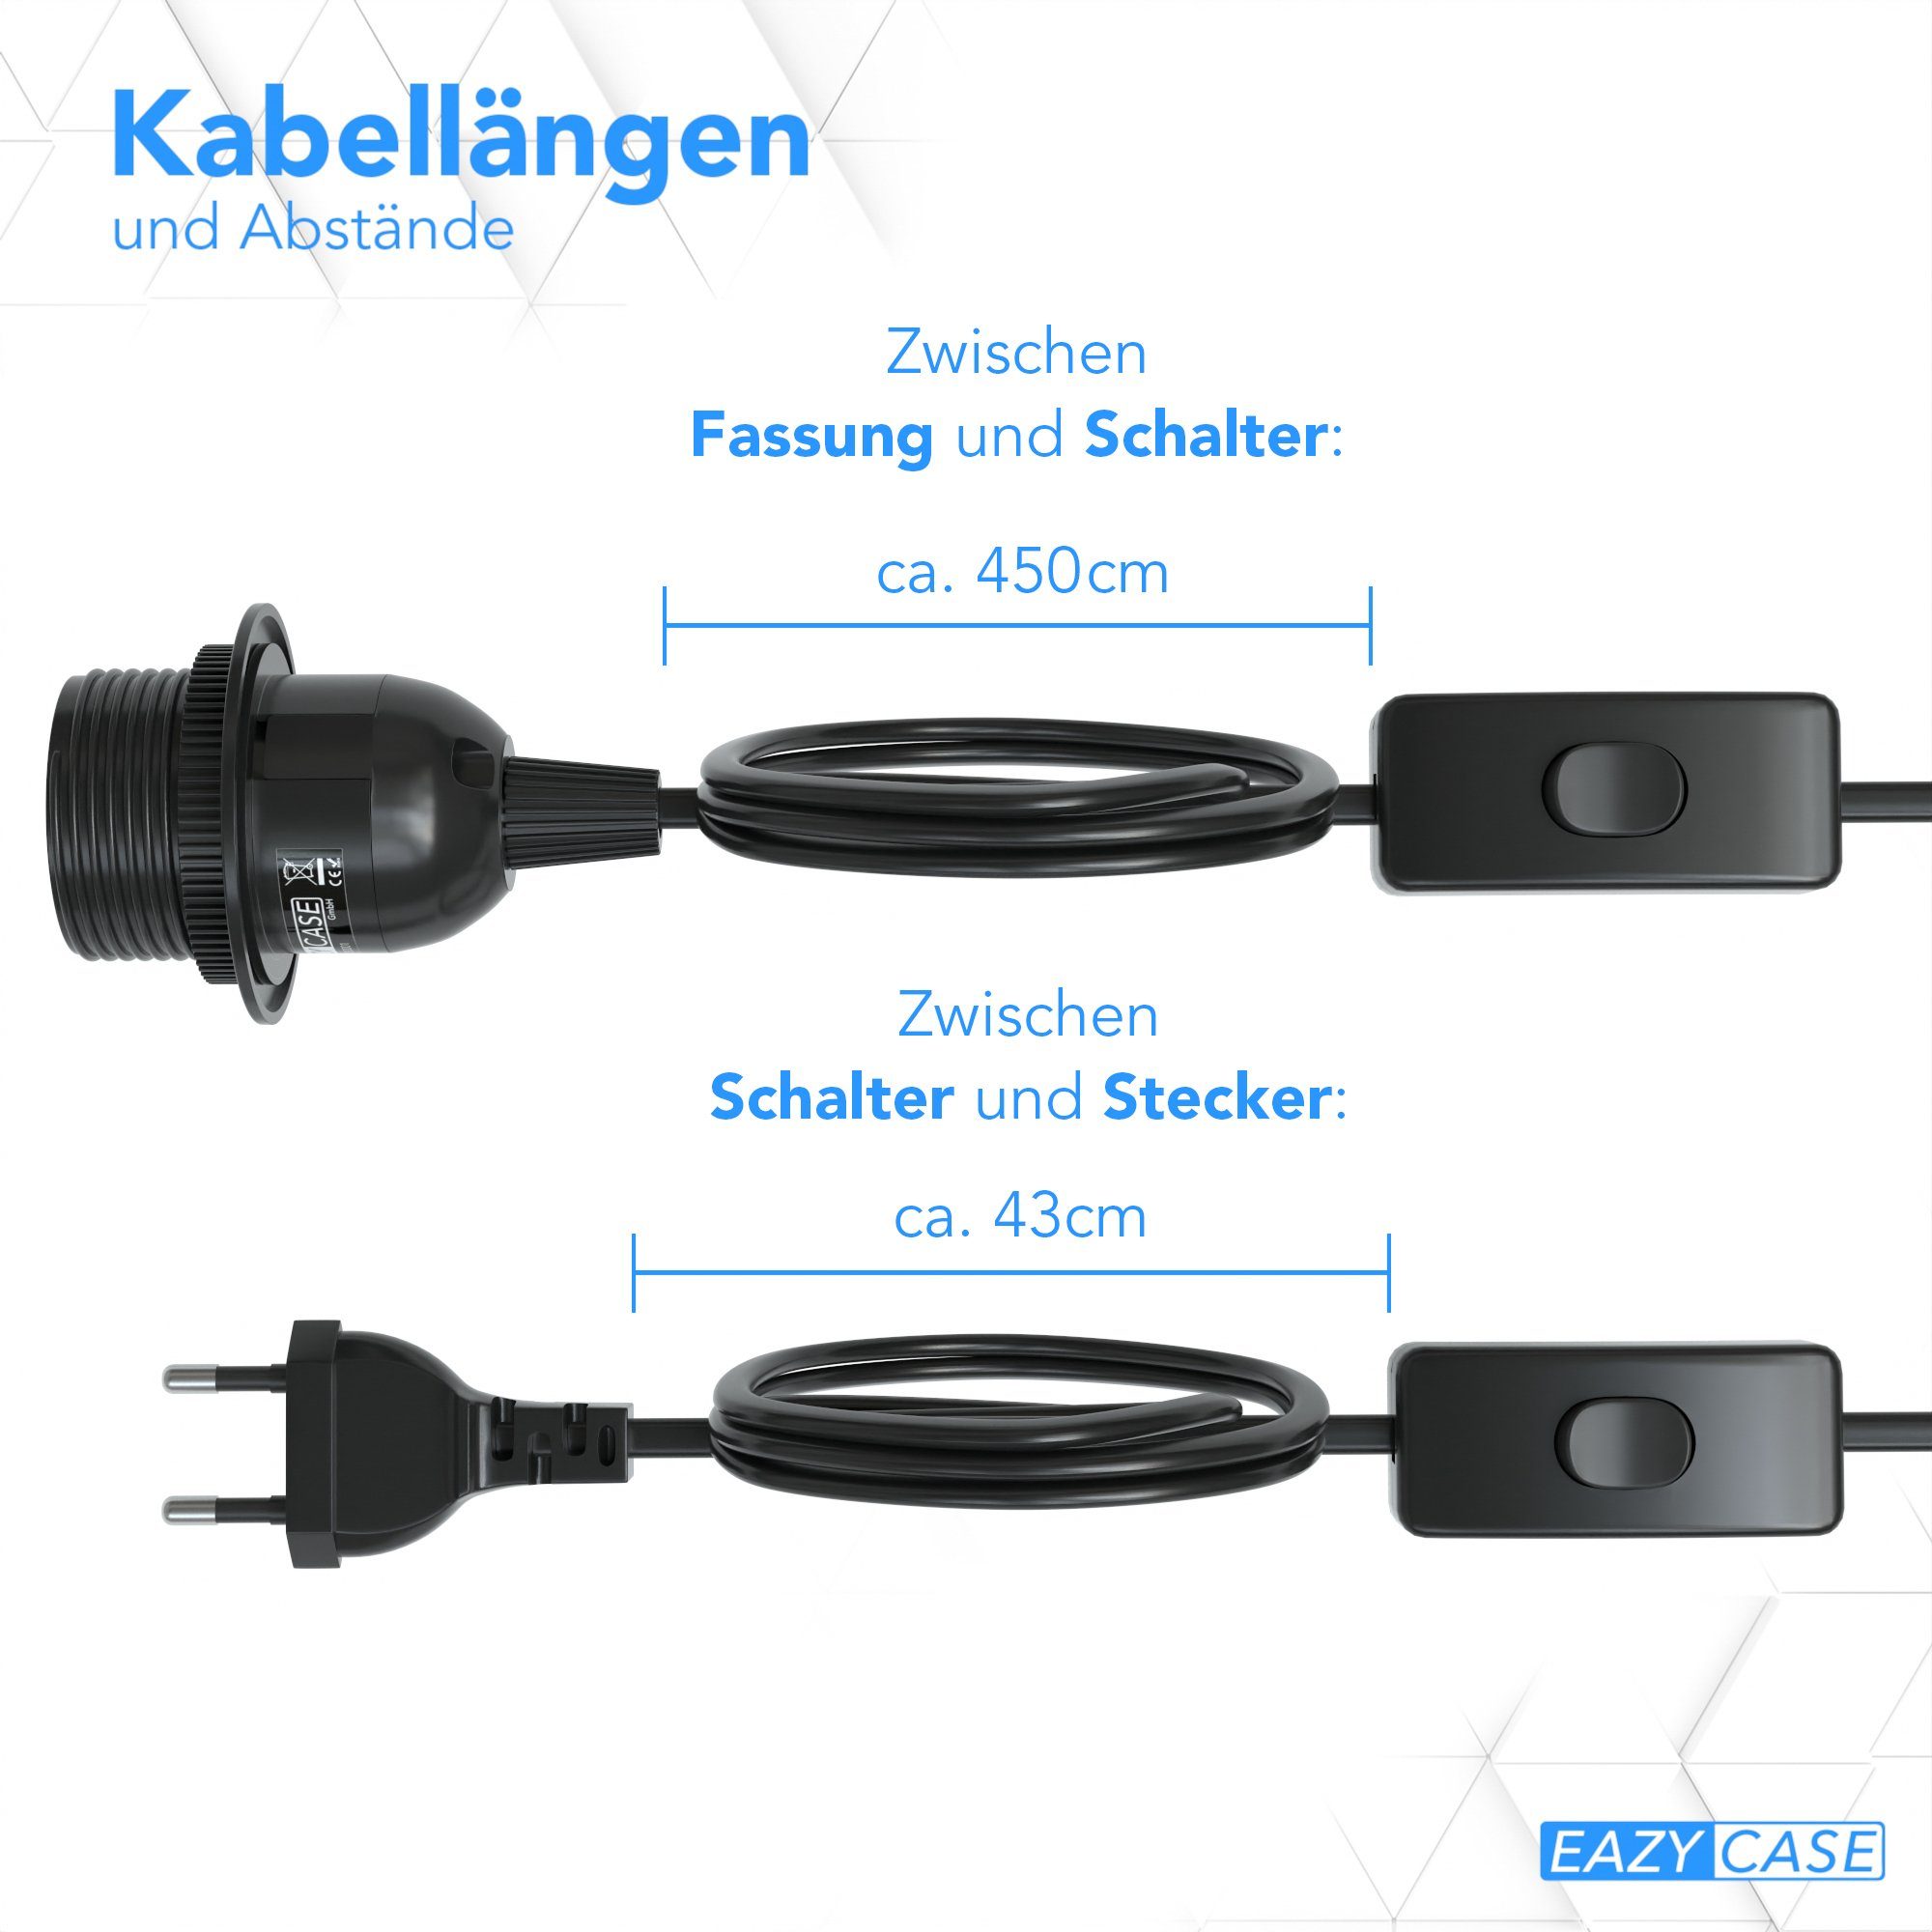 EAZY CASE Lampenfassung E27 Lampensockel Schalter Lampen mit Netzstecker Kabel Schwarz und Schalter Fassung 5m, Kabel Lampenaufhängung E27